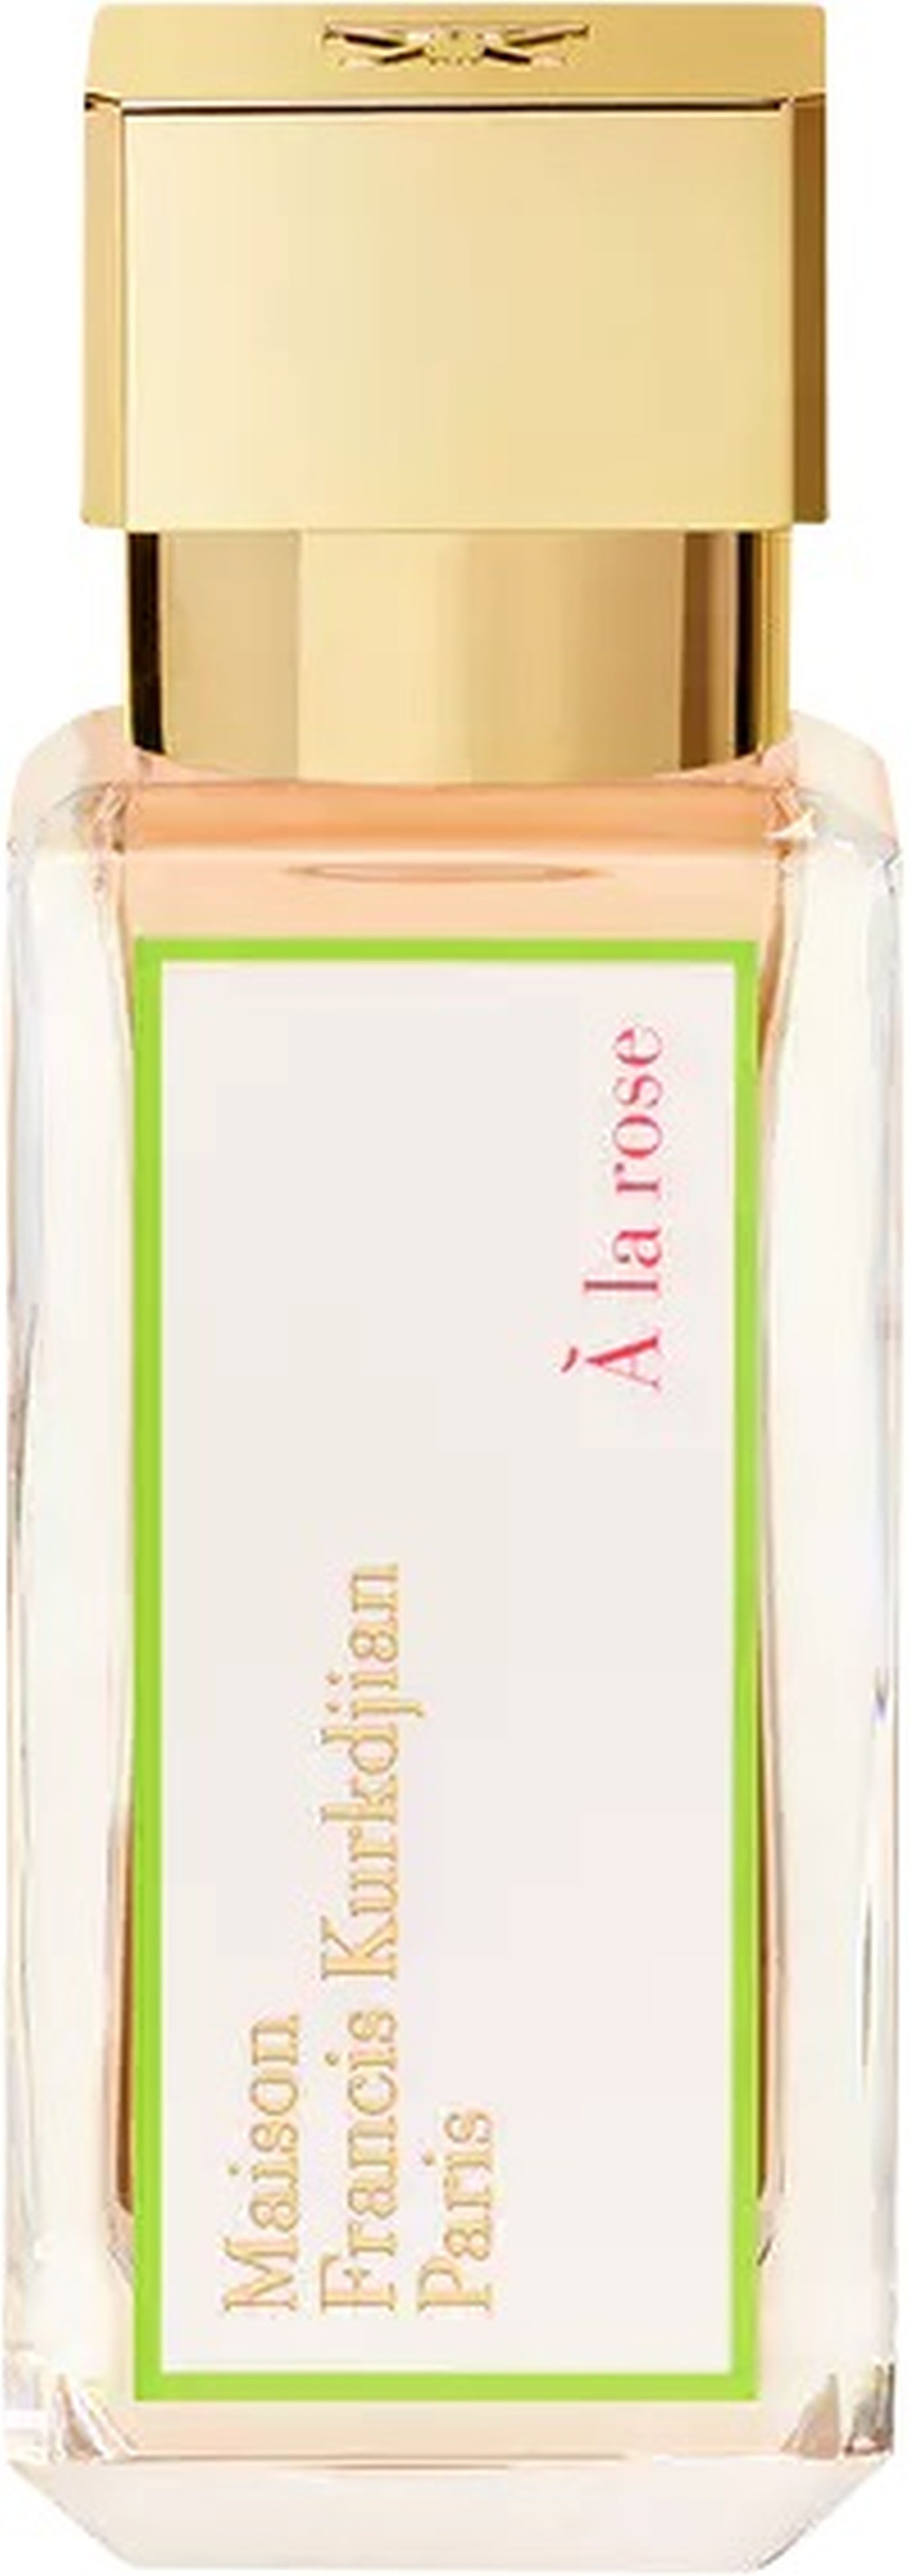 Maison Francis Kurkdjian Eau de Parfum Fragrances À la rose Damenparfüm